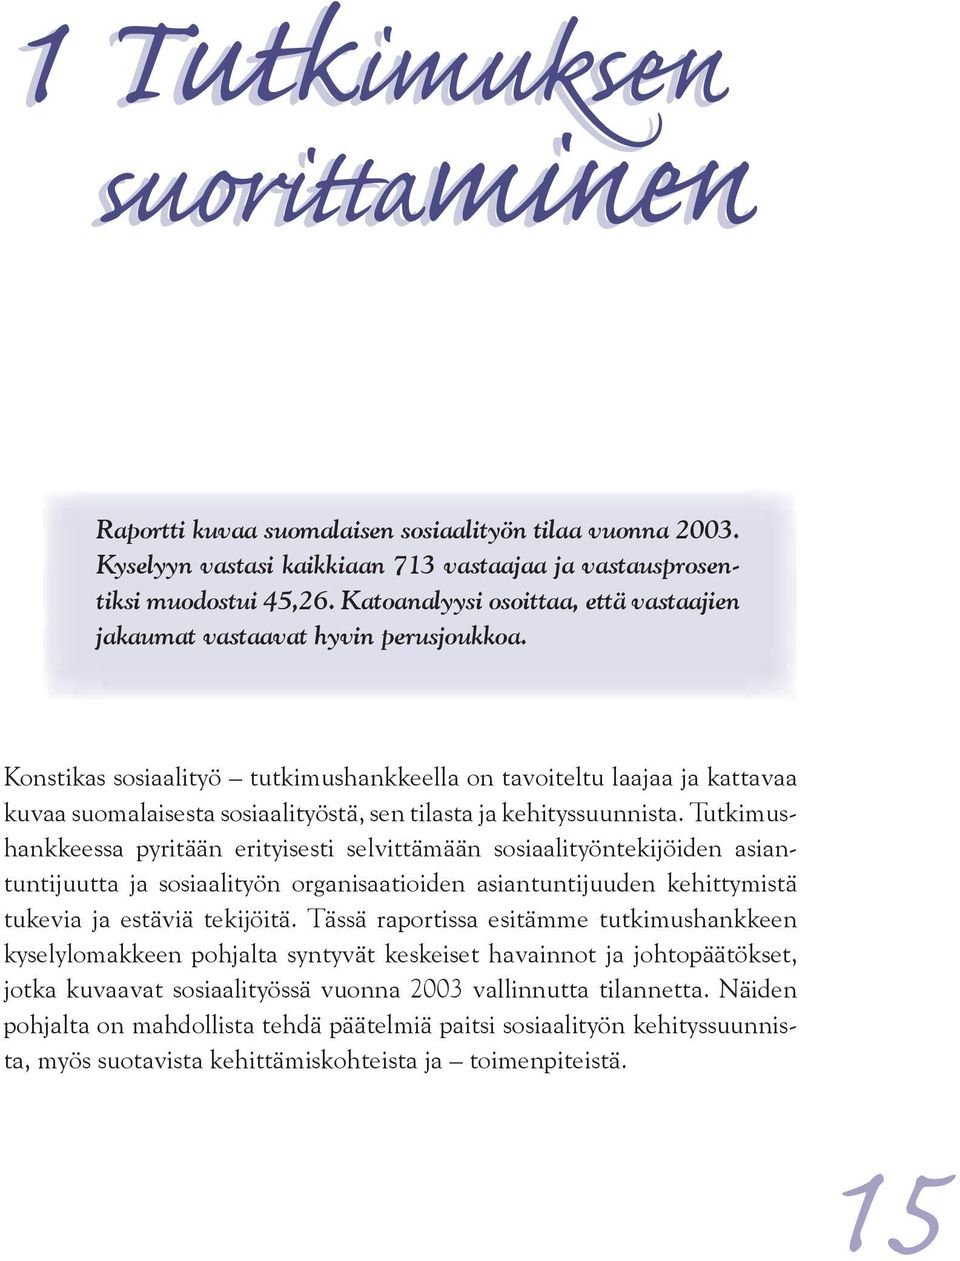 Konstikas sosiaalityö tutkimushankkeella on tavoiteltu laajaa ja kattavaa kuvaa suomalaisesta sosiaalityöstä, sen tilasta ja kehityssuunnista.